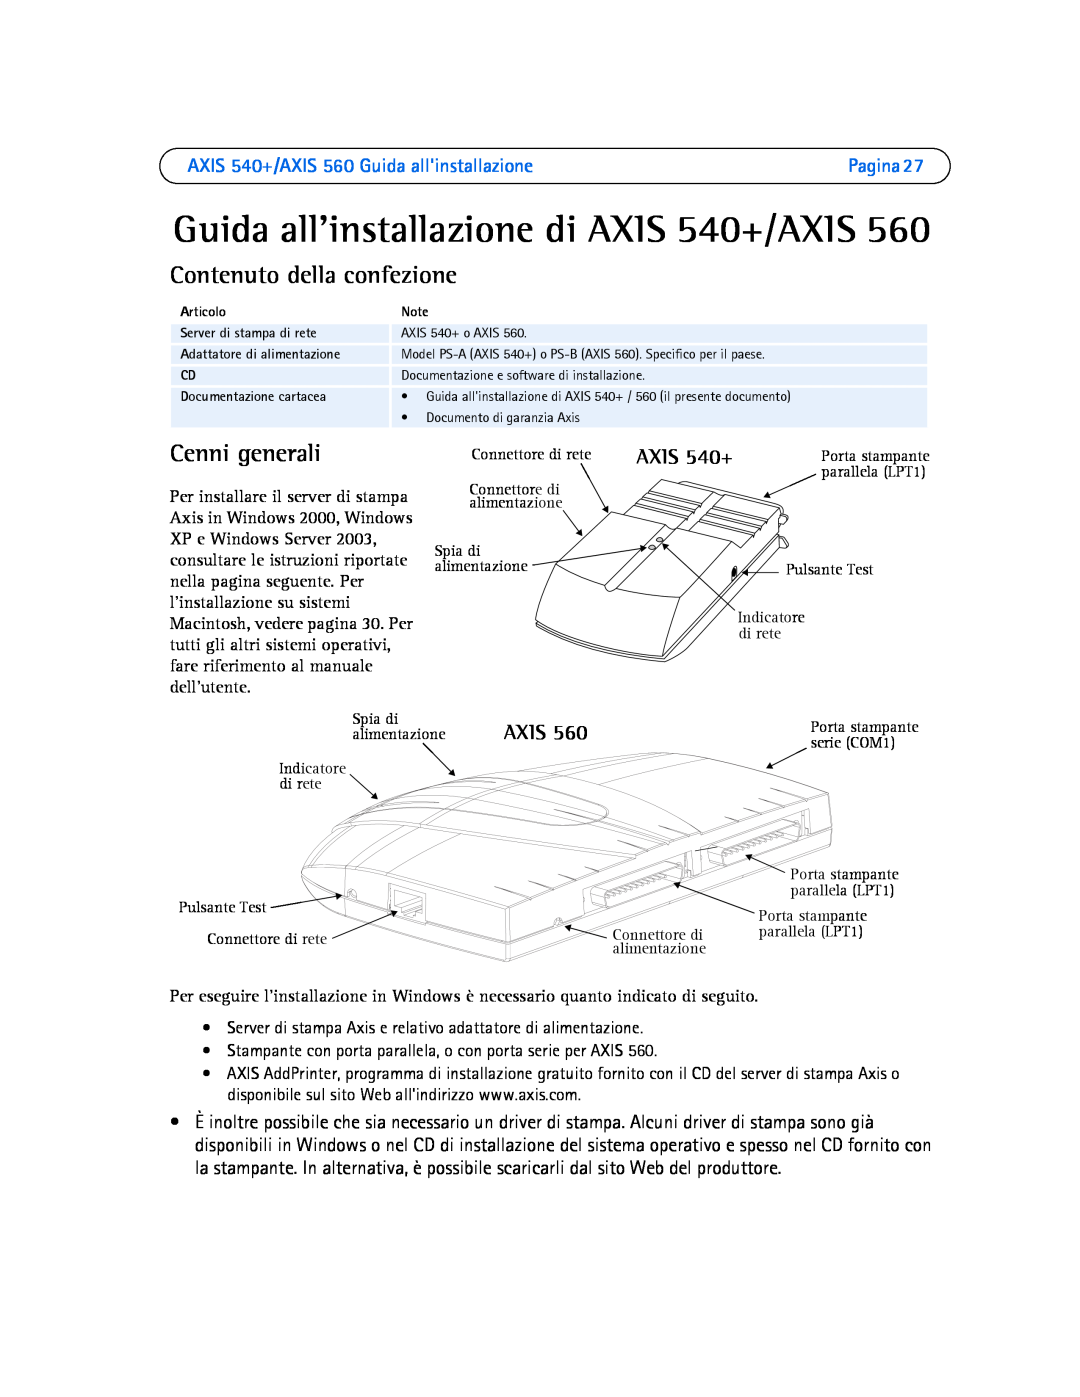 Axis Communications manual Contenuto della confezione, Cenni generali, AXIS 540+/AXIS 560 Guida allinstallazione, Axis 